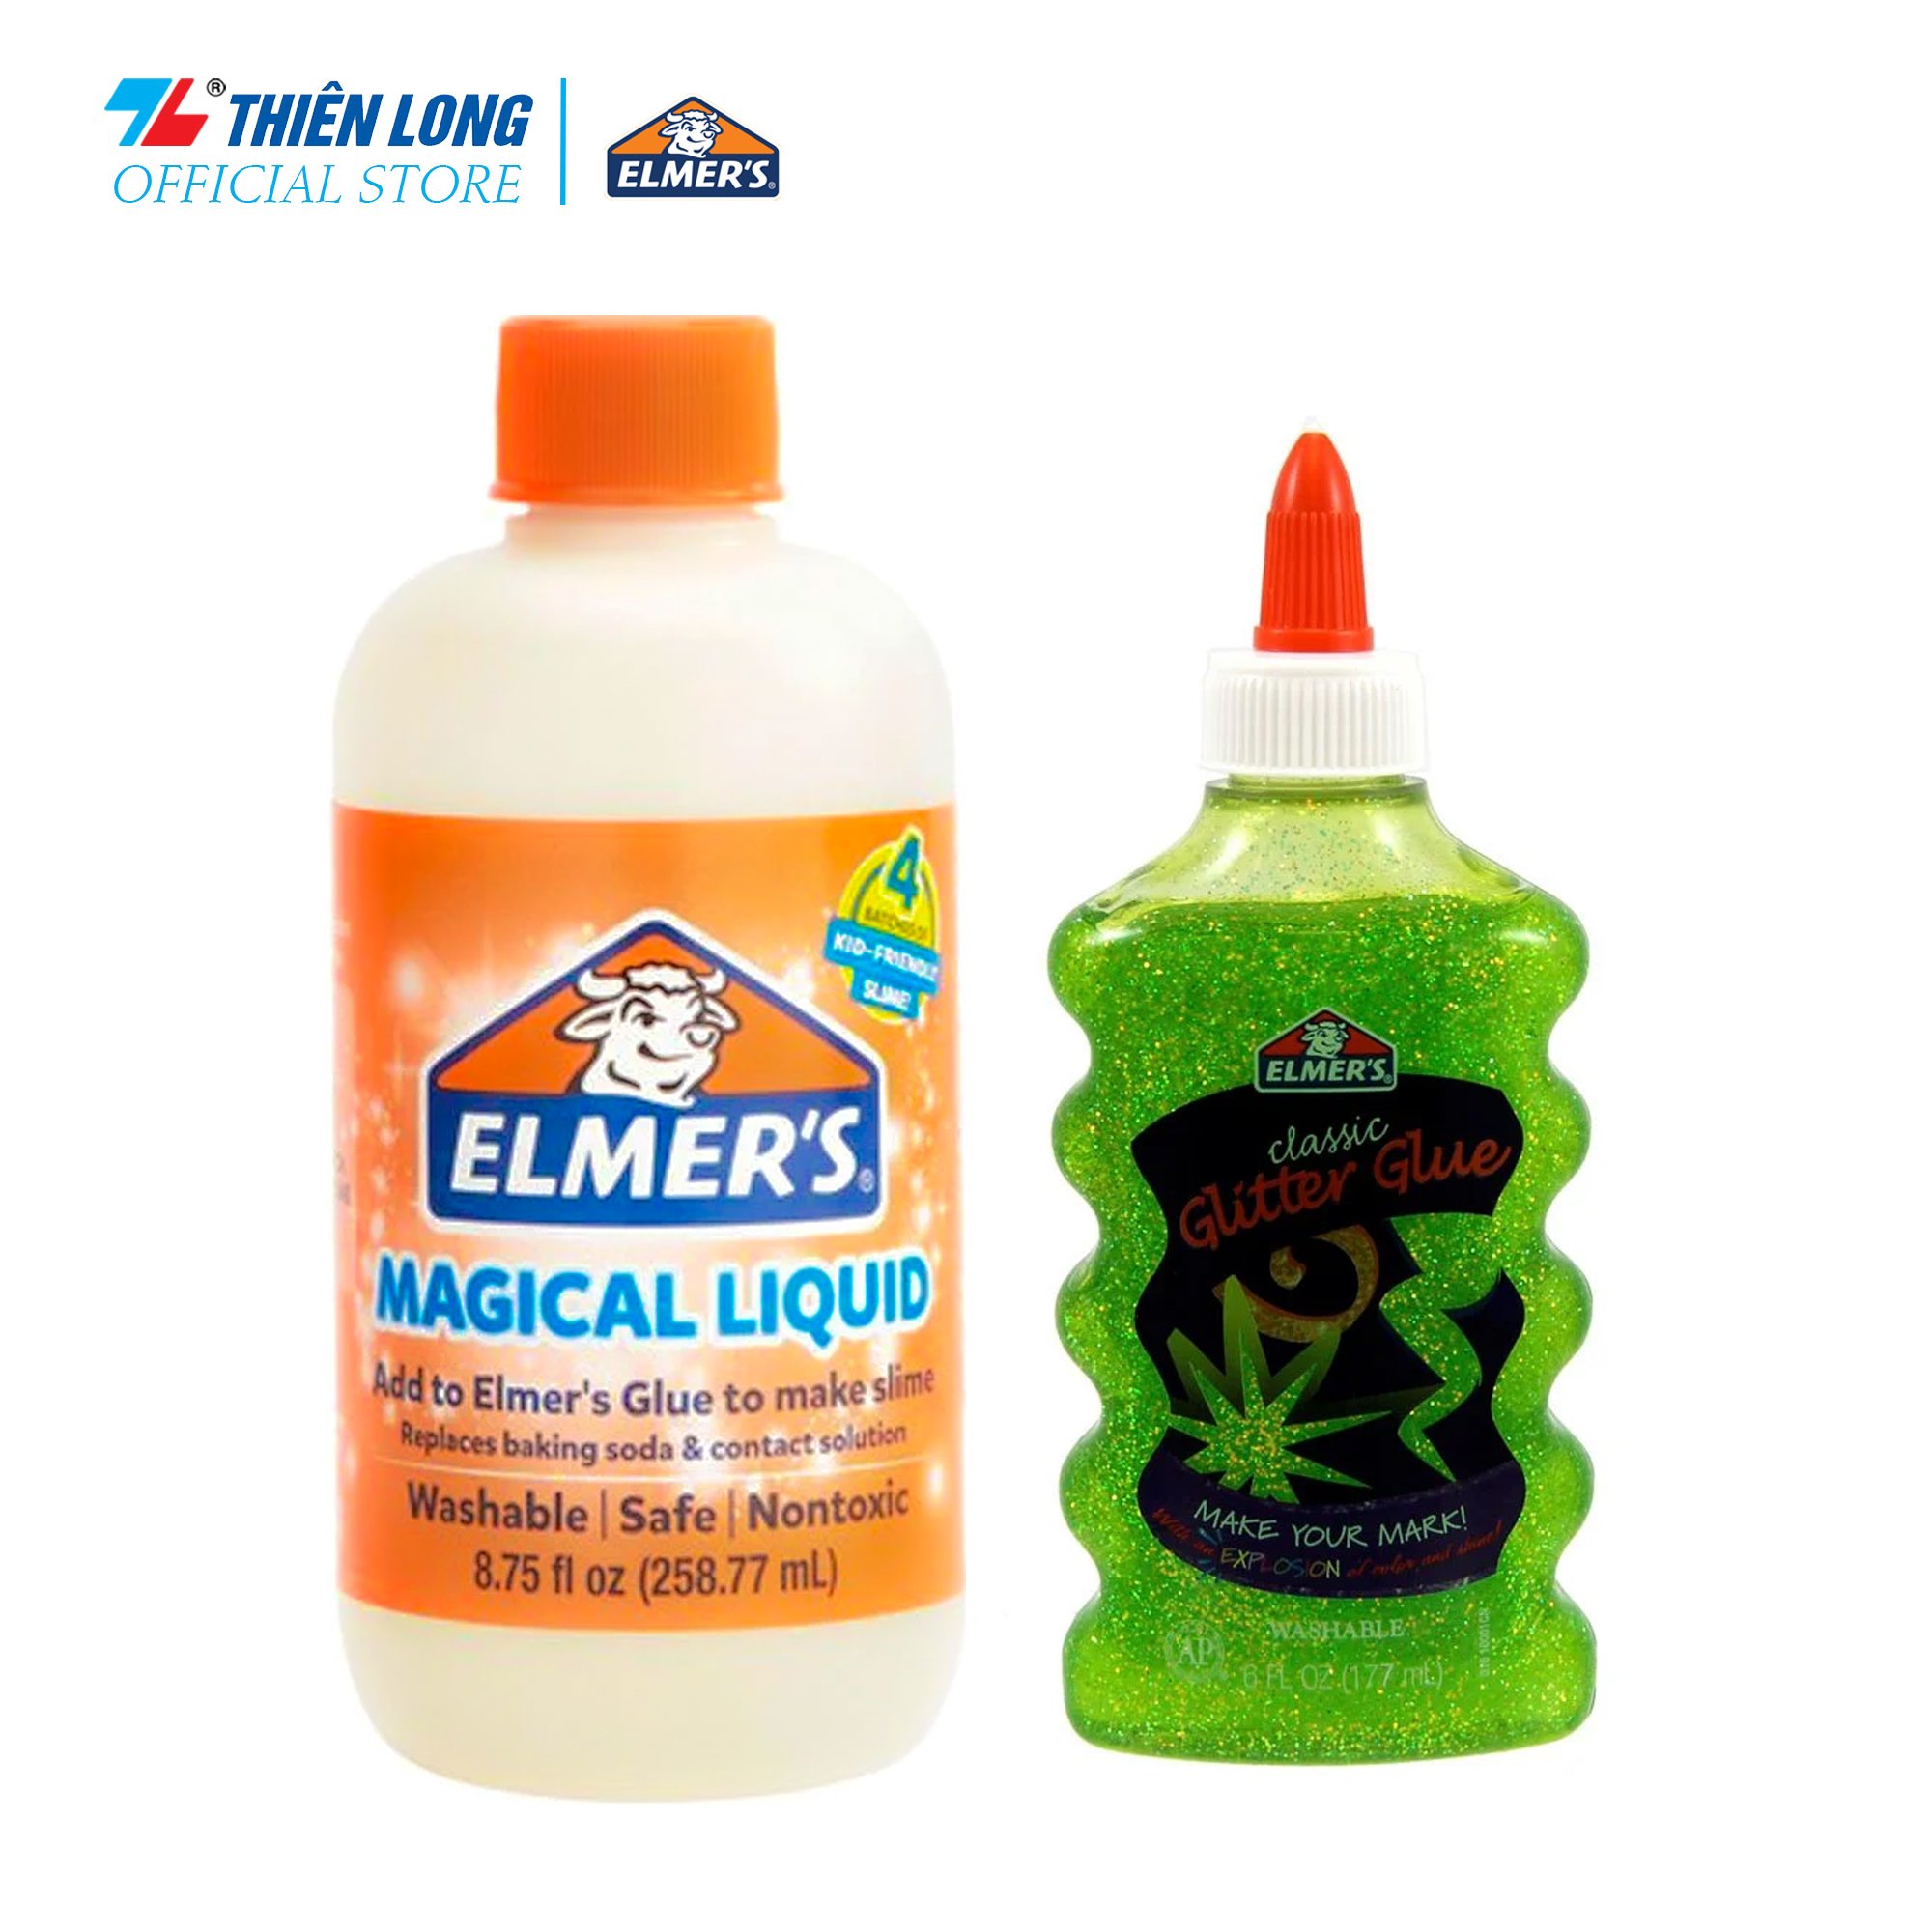 Combo Keo Dán Kim Tuyến Elmer's 177.4 ml Xanh Lá & Dung dịch Elmer's tạo Slime 258.77ml